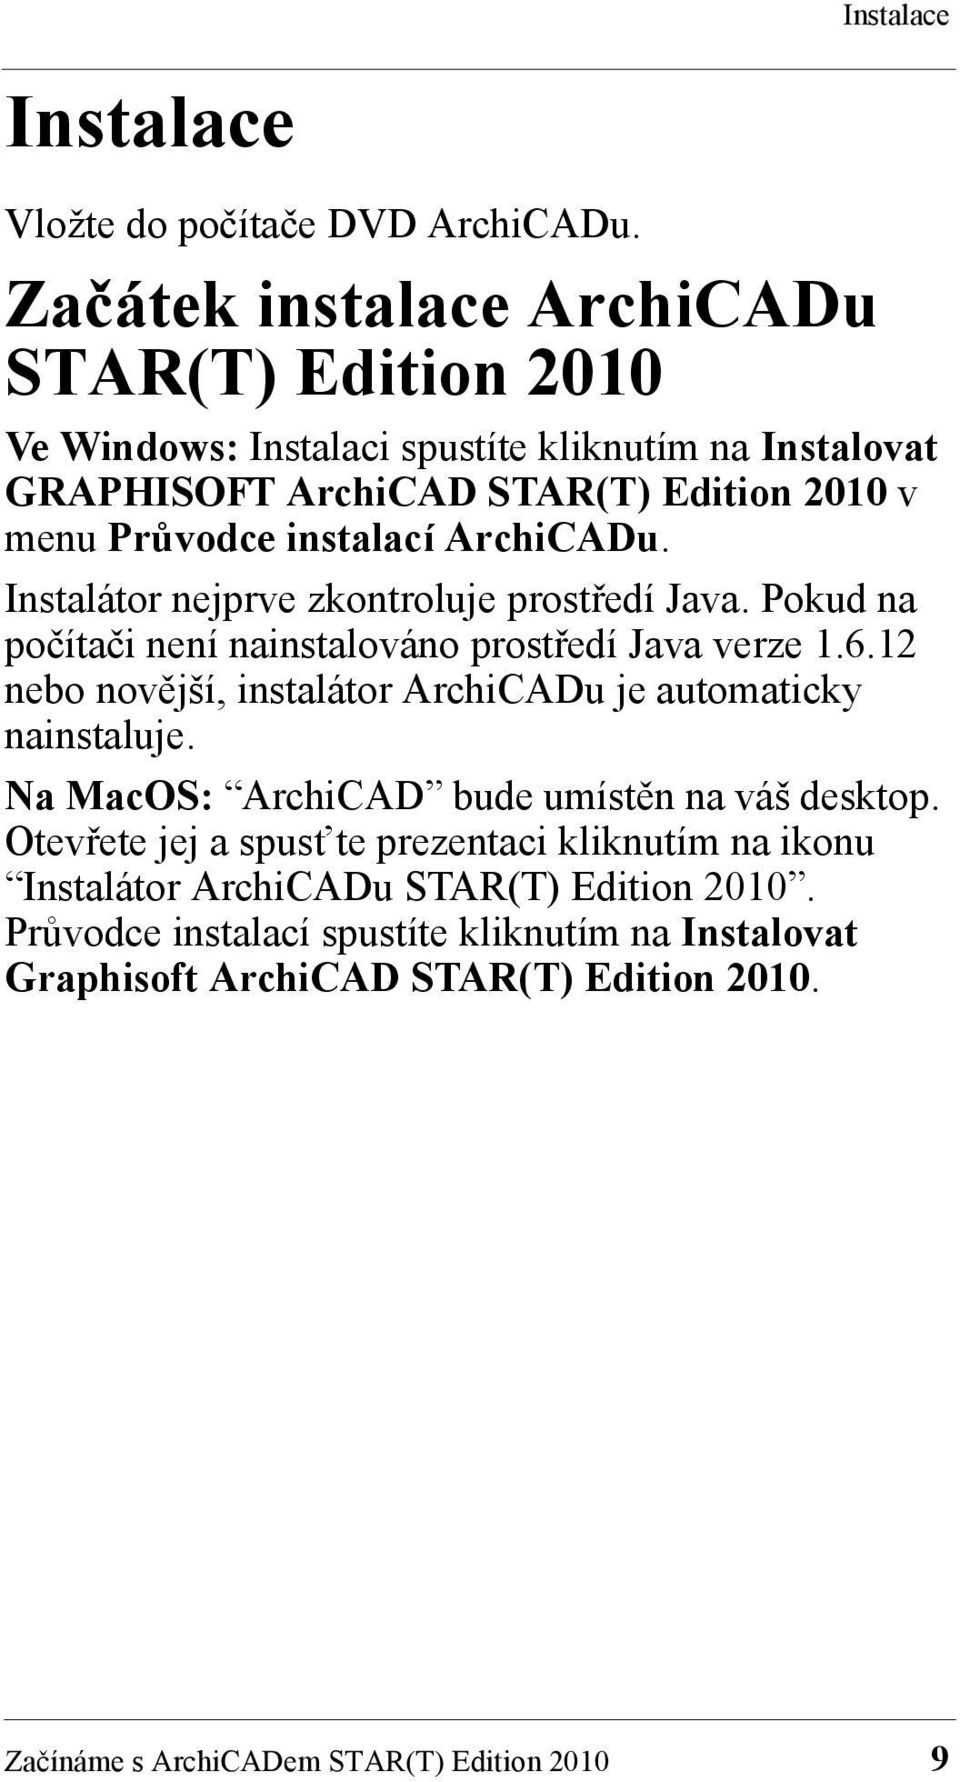 ArchiCADu. Instalátor nejprve zkontroluje prostředí Java. Pokud na počítači není nainstalováno prostředí Java verze 1.6.